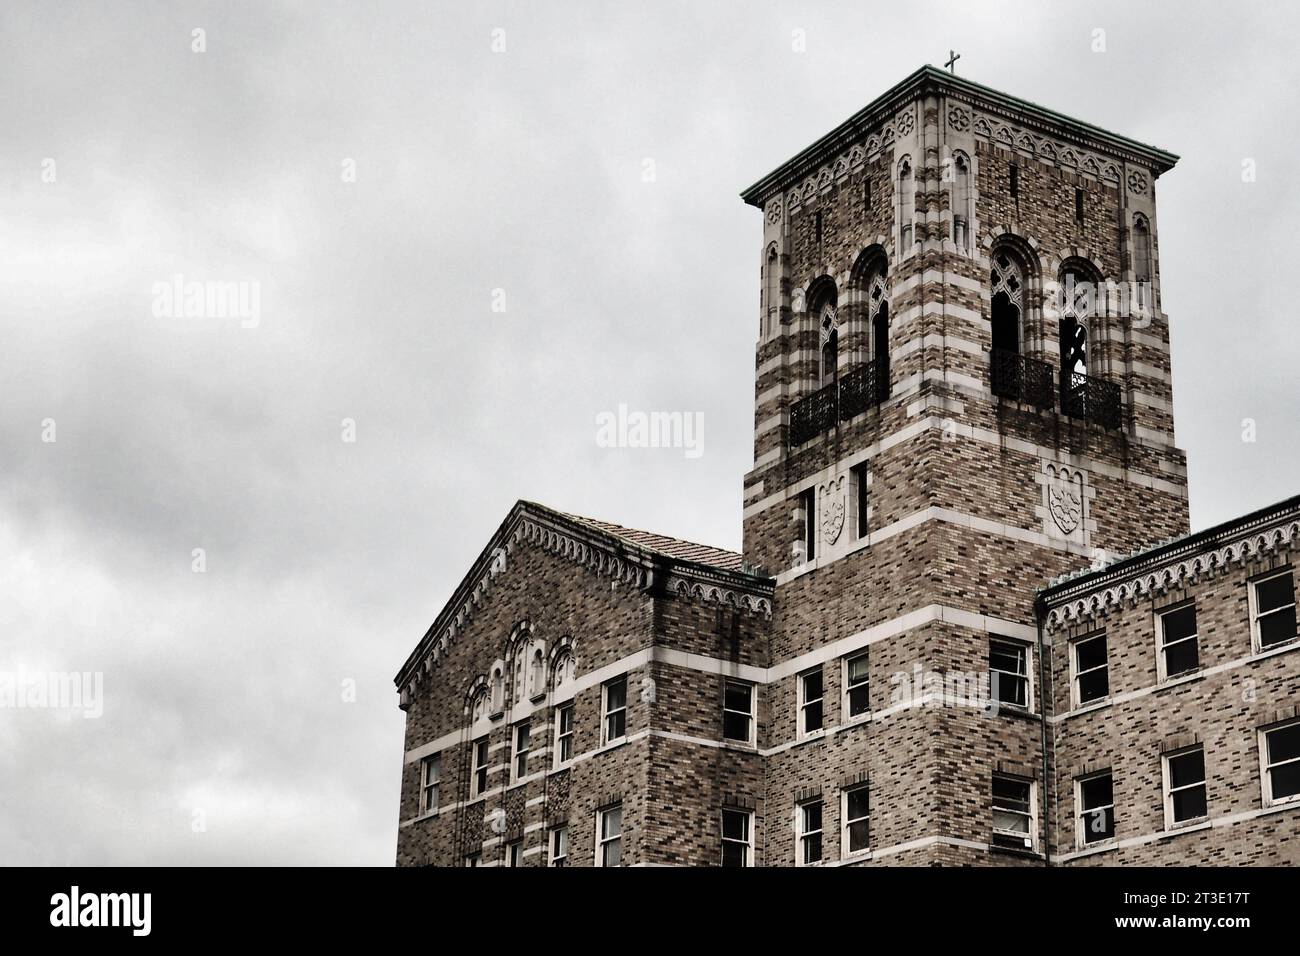 Suggestiva immagine in bianco e nero del campanile dello storico seminario in mattoni al Saint Edward's State Park di Kenmore, Washington. Foto Stock